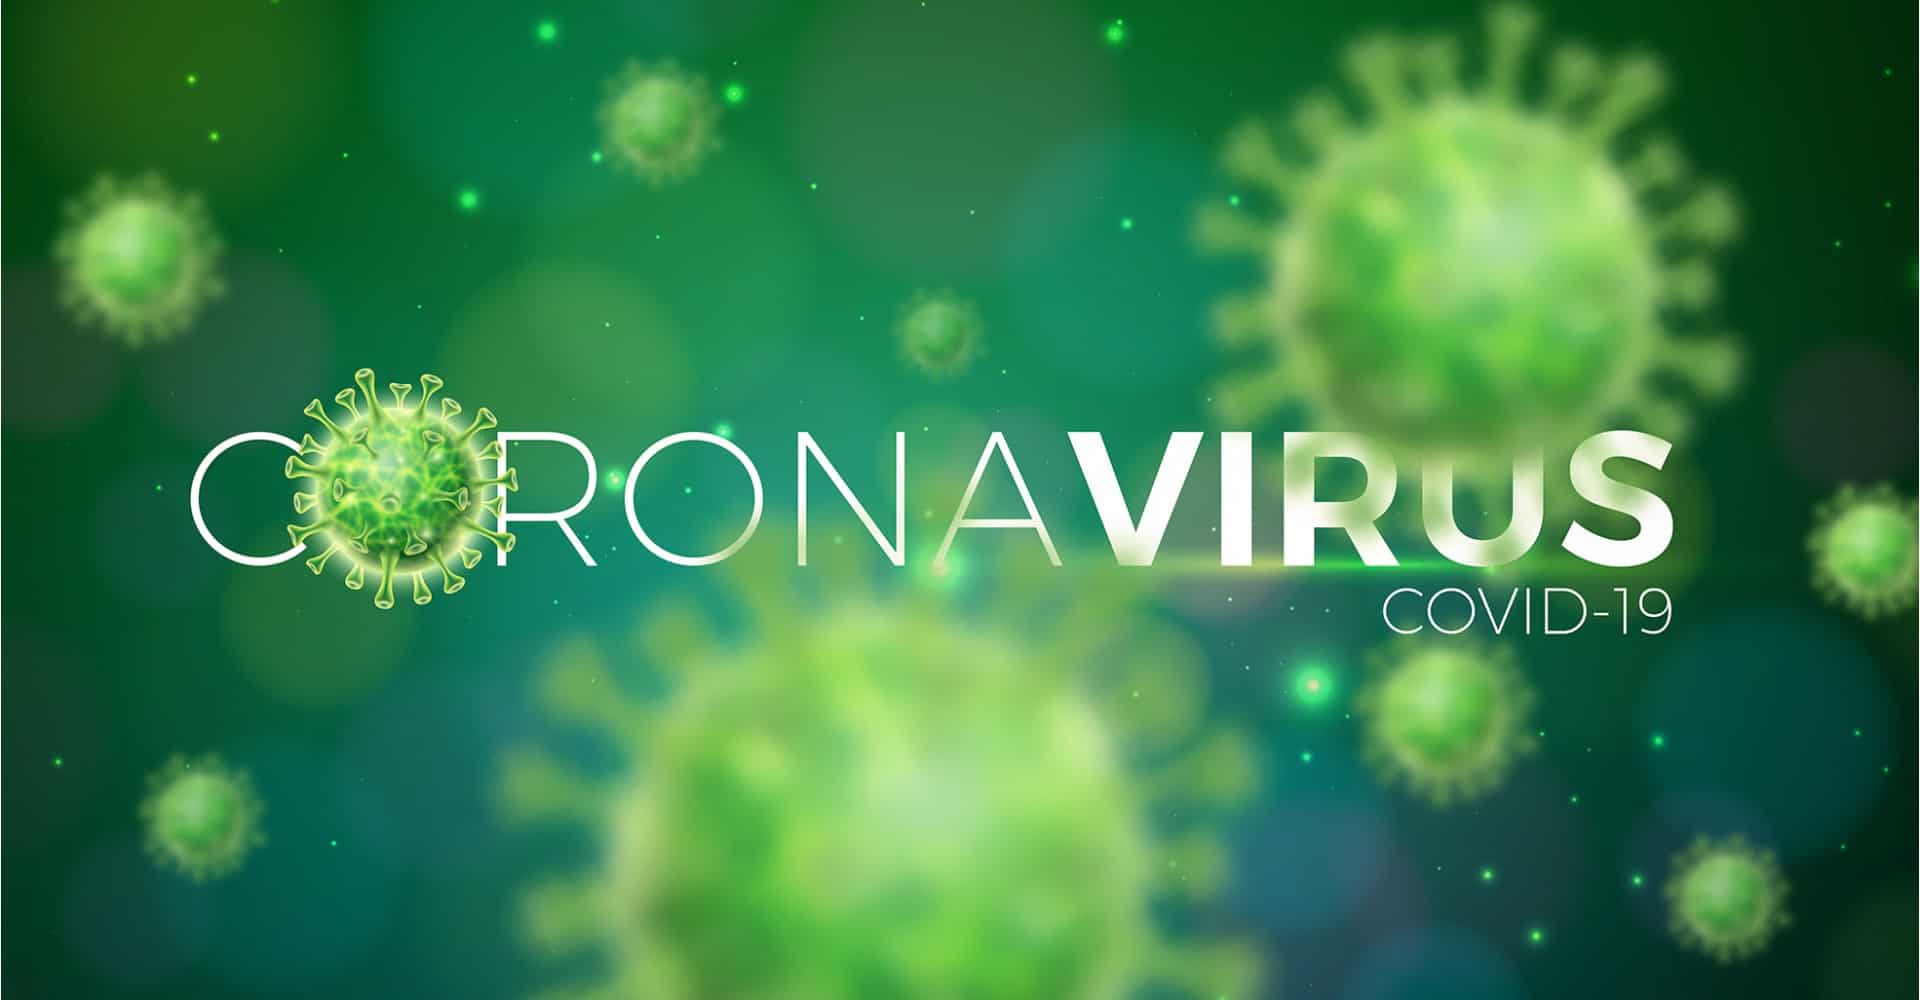 coronavirusuri - De ce SARS-CoV-2 se raspandeste atat de usor?